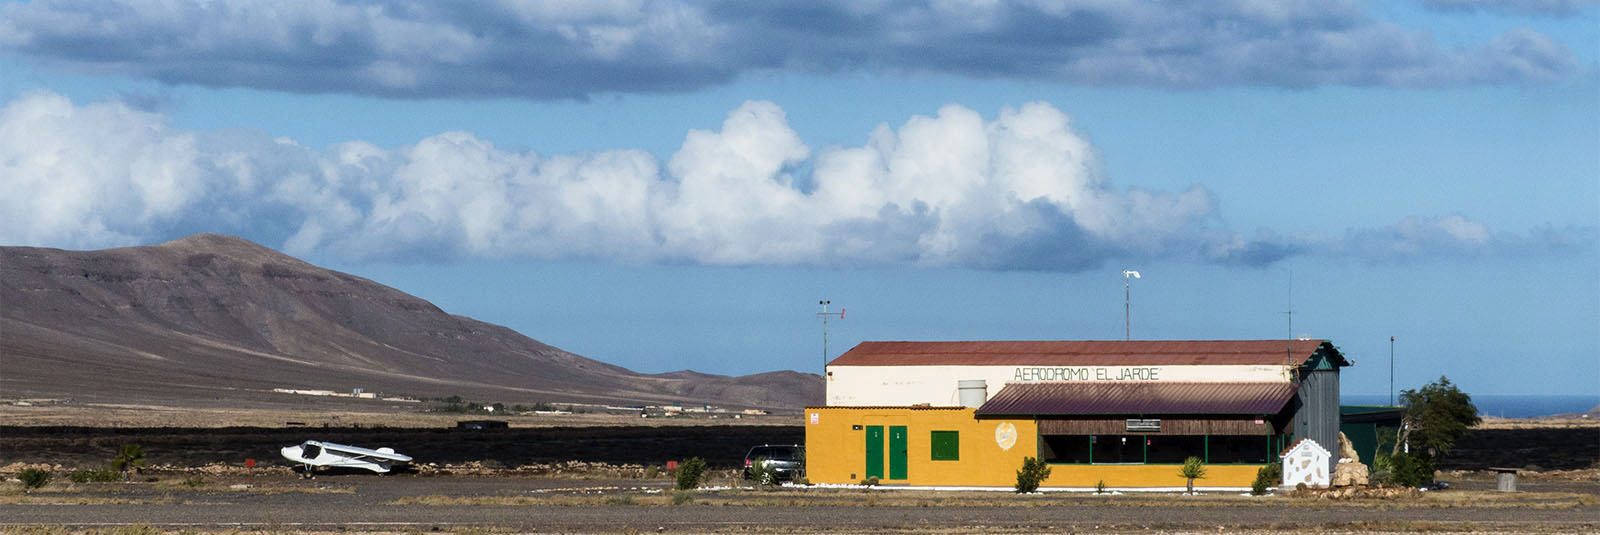 Das Aerodrom von Tiscamanita Fuerteventura.